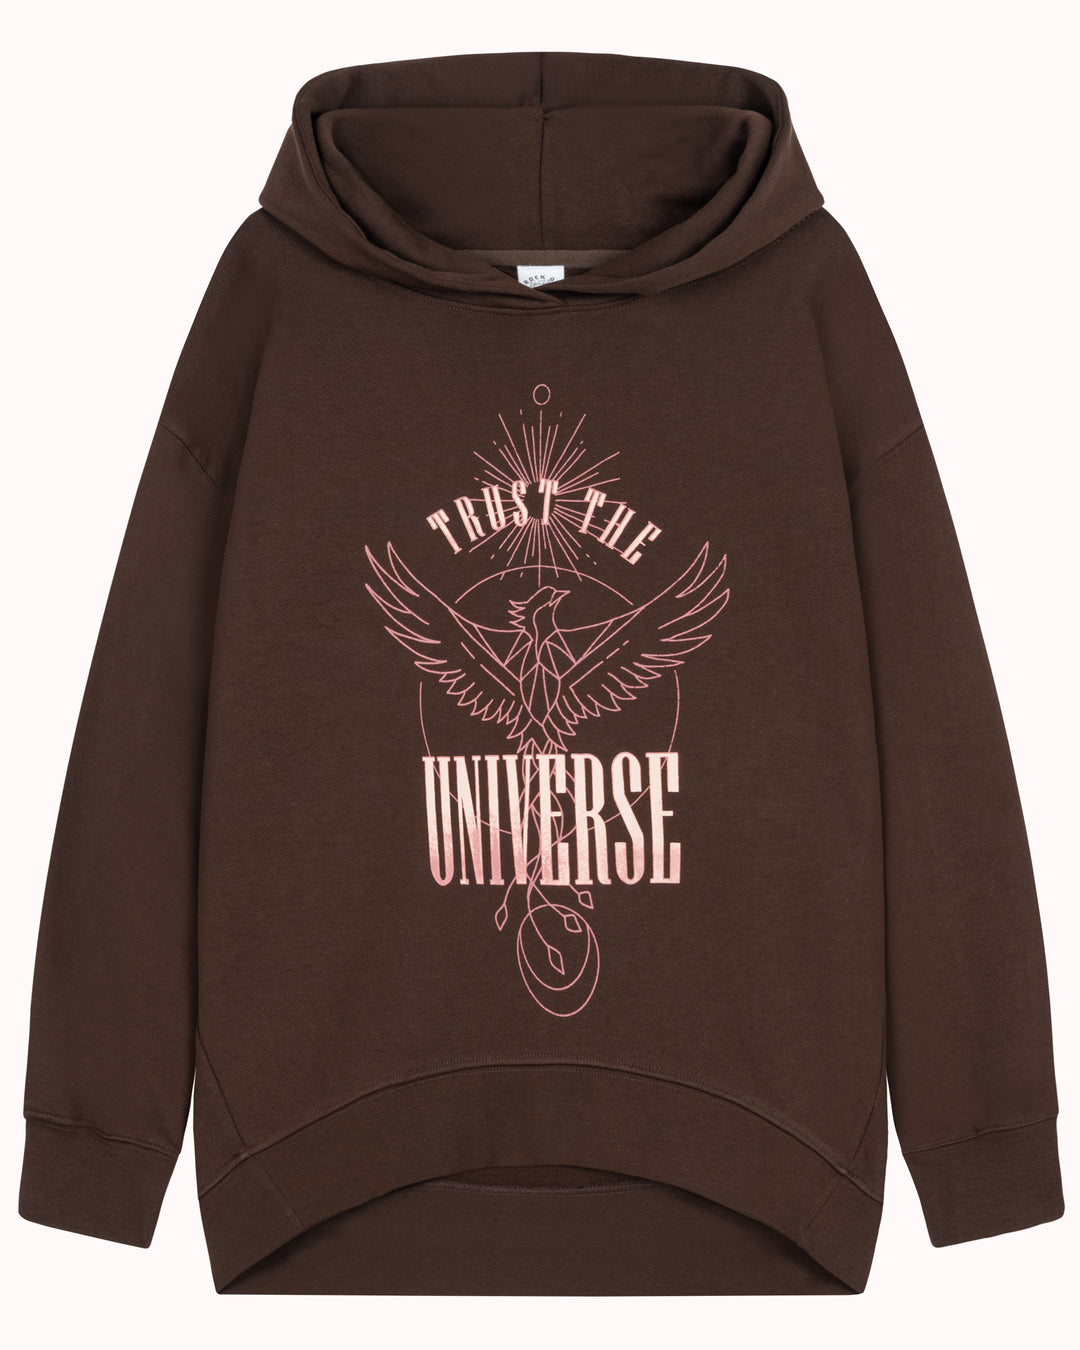 Trust the Universe Hooded Sweatshirt (brown)